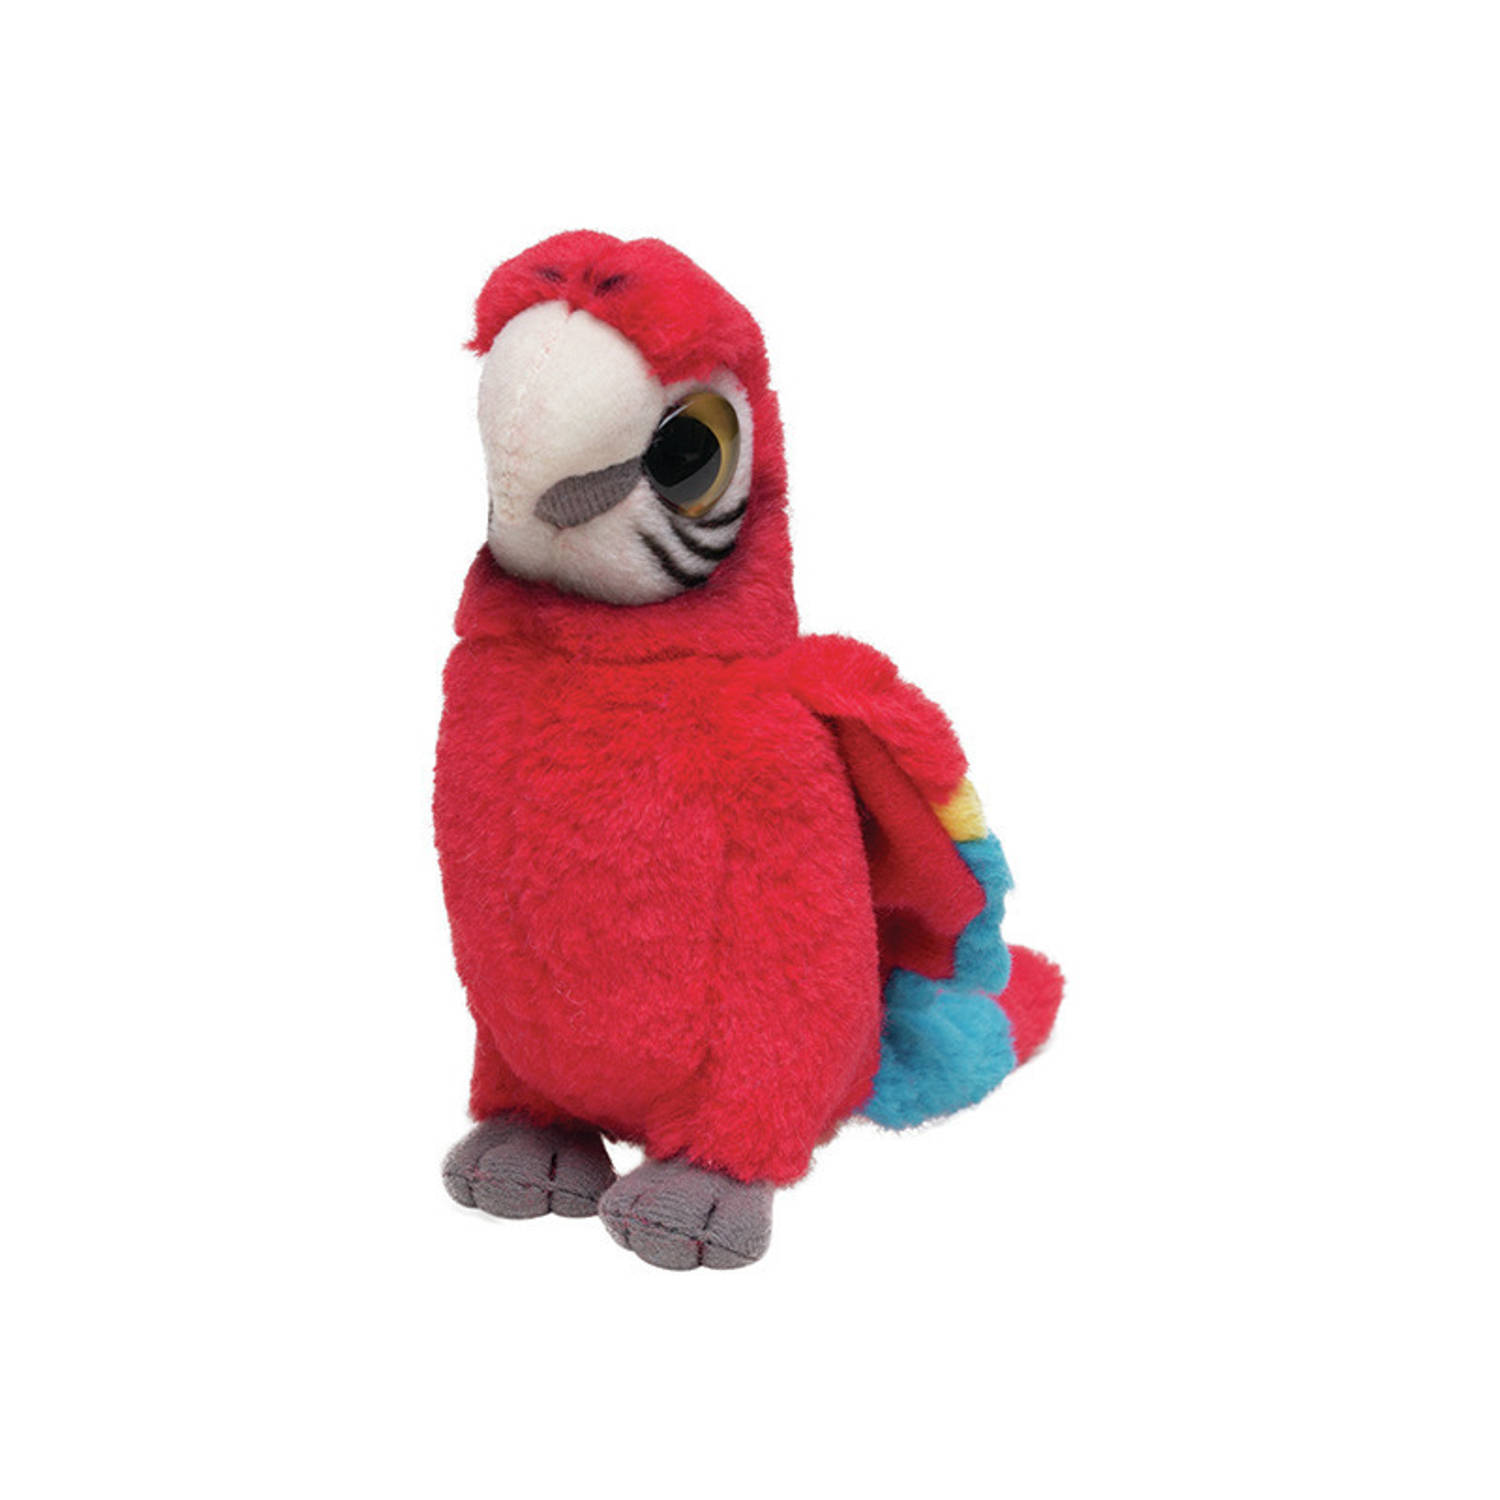 Pluche Rode Papegaai knuffeldier van 14 cm - Speelgoed dieren knuffels cadeau voor kinderen